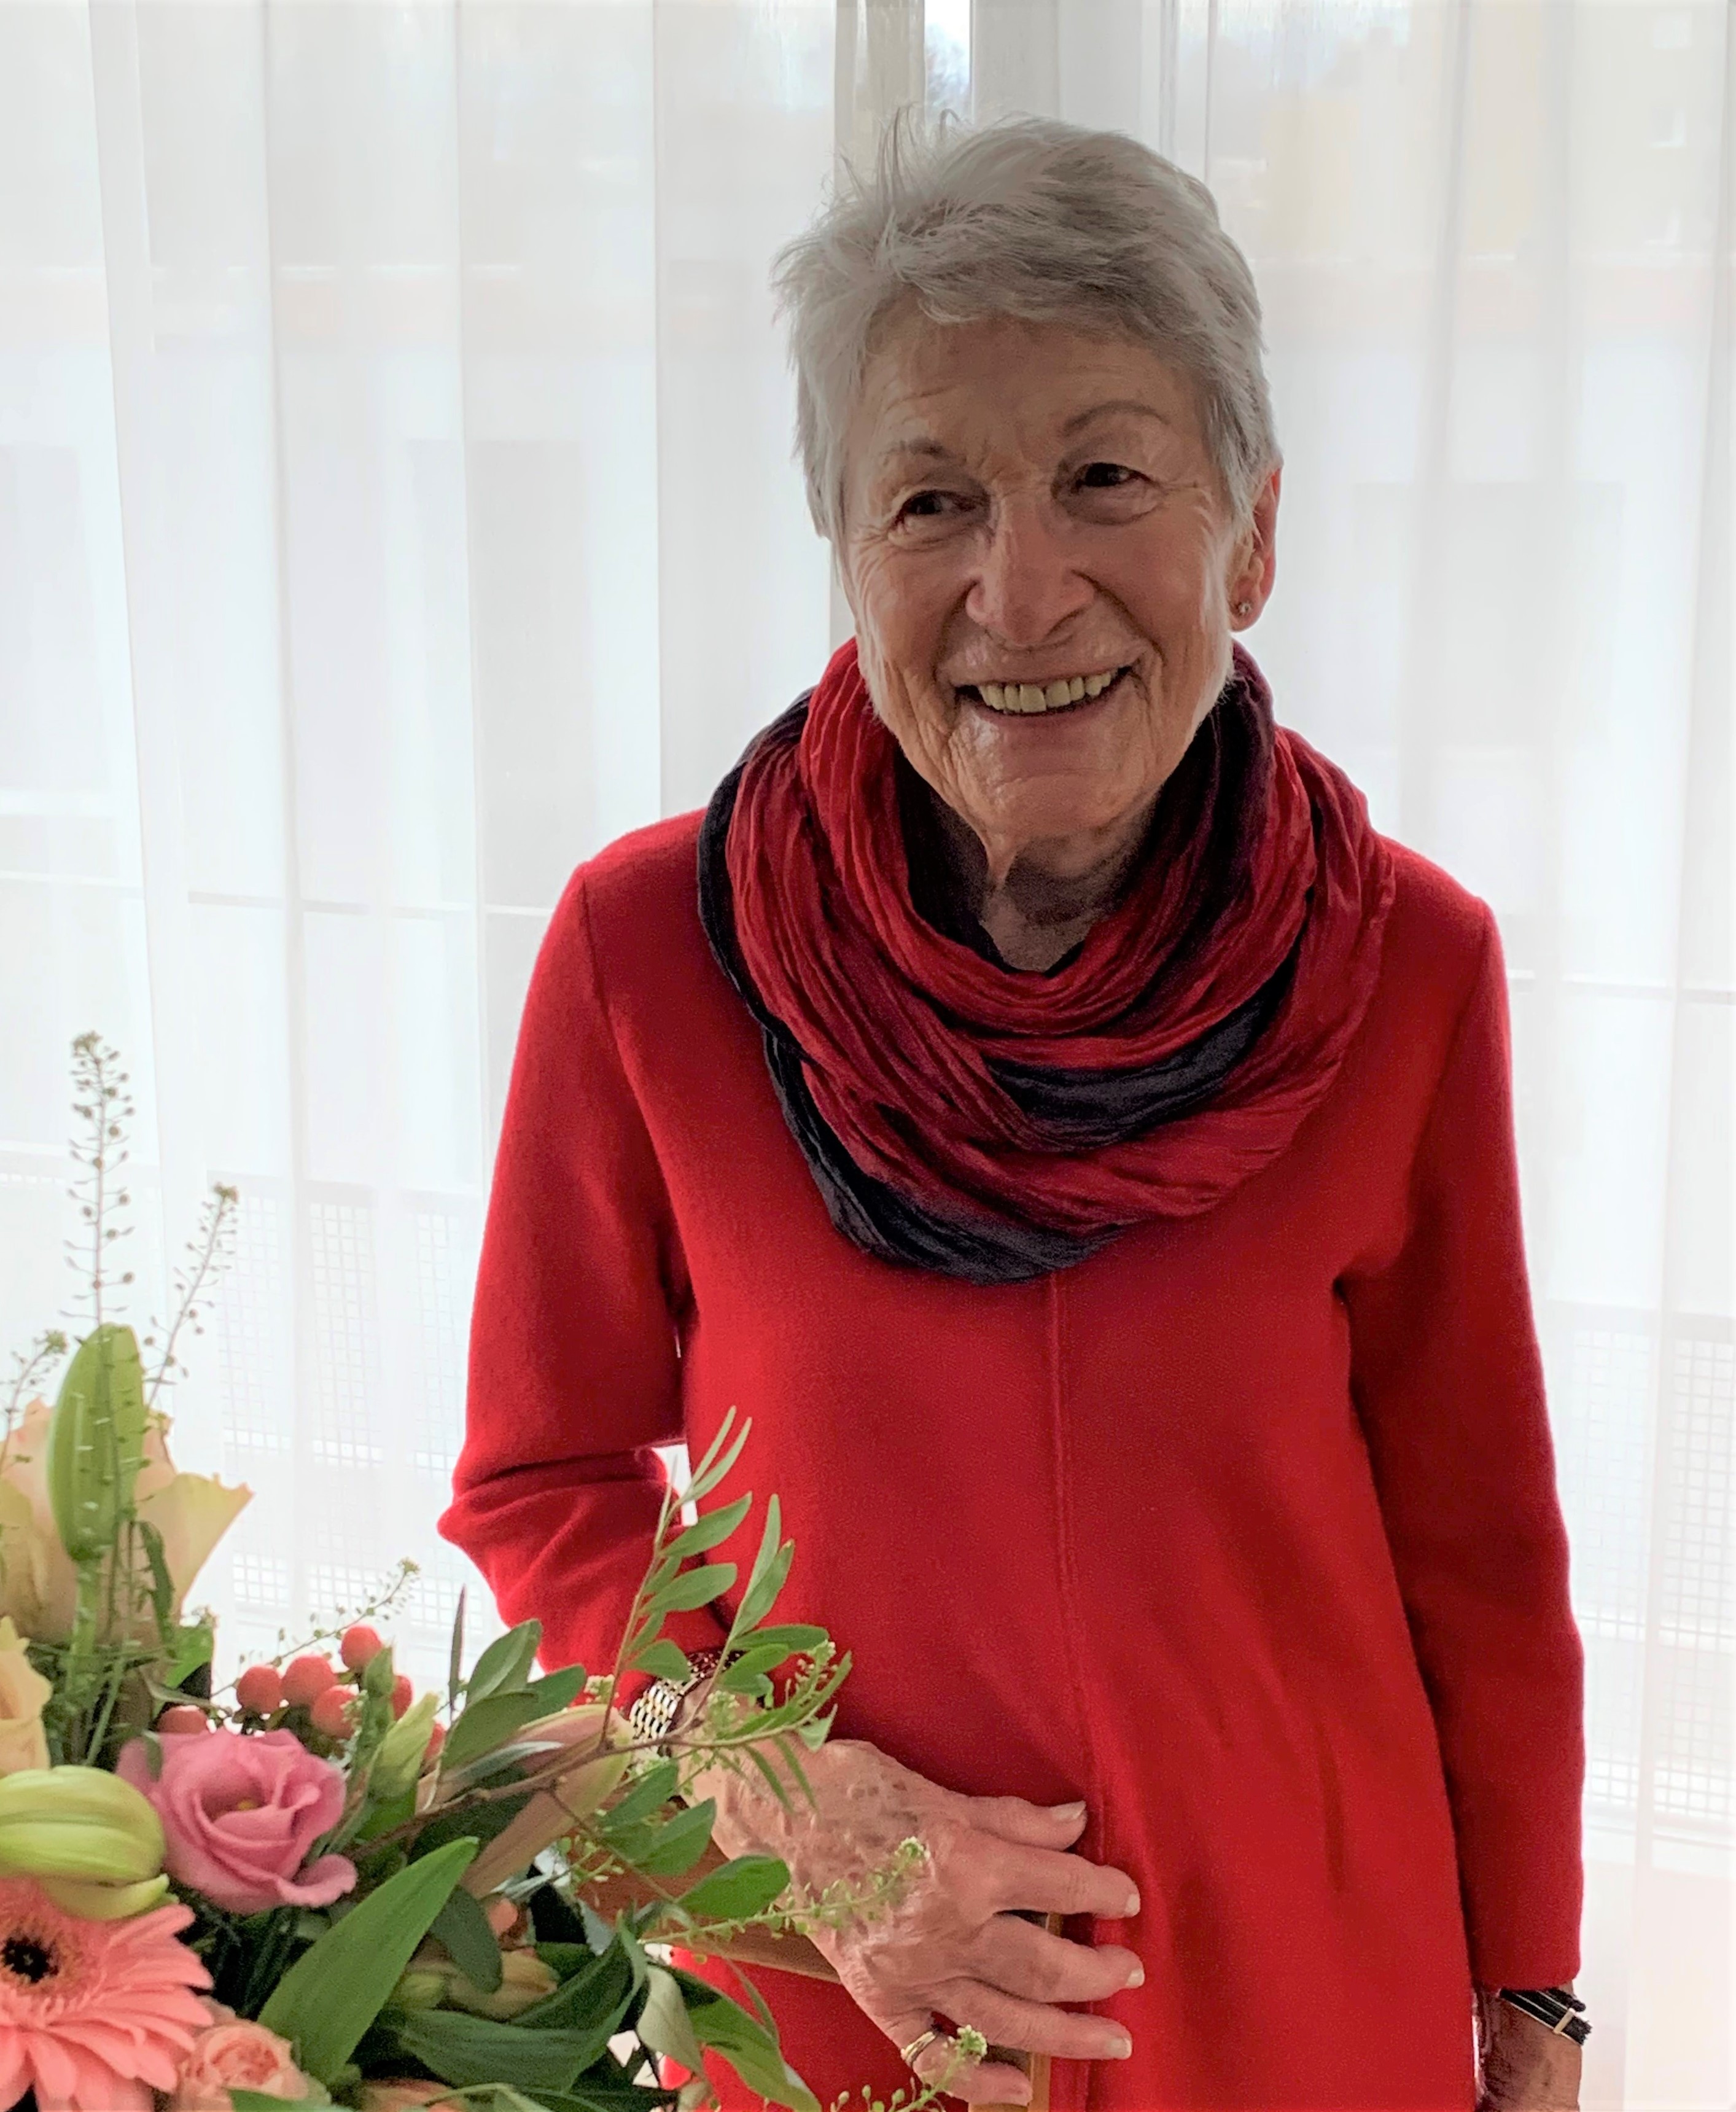 Am Sonntag, 7. Februar 2021, durfte Frau Beatrice Walter ihren 90. Geburtstag feiern!
Die Gemeindebehörden gratulieren ganz herzlich zum Wiegenfest.